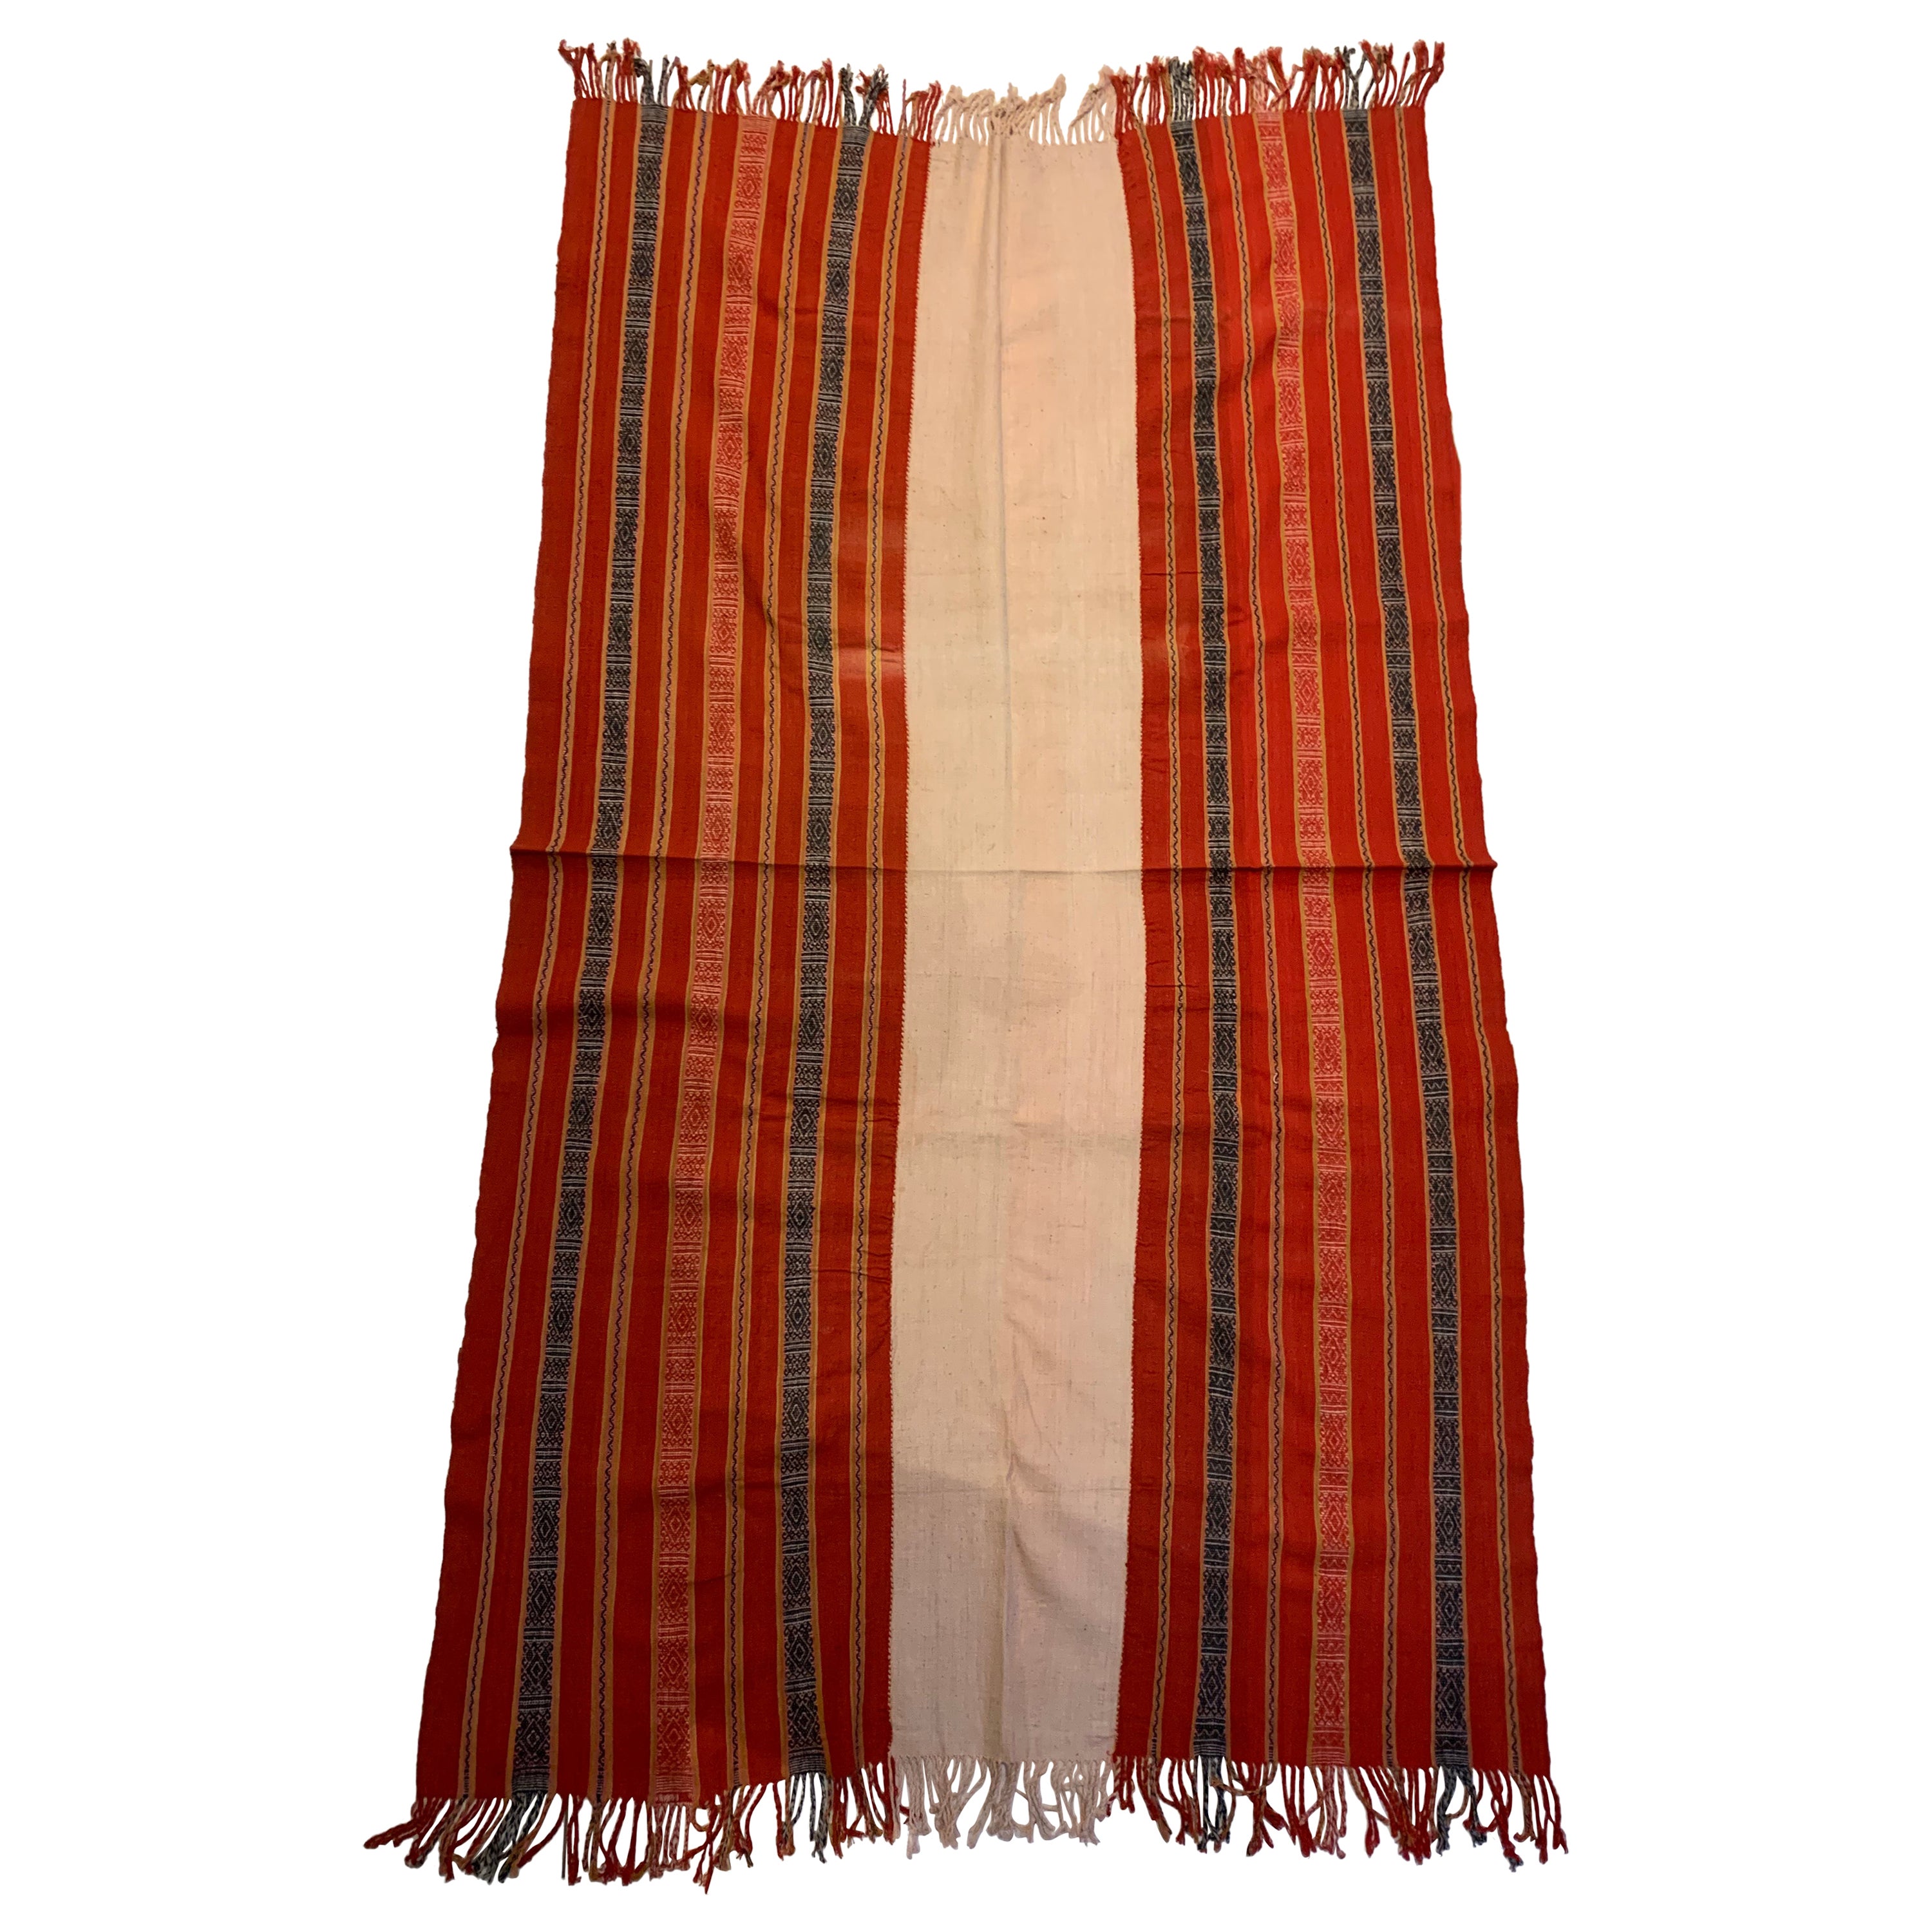 Ikat-Textil von Timor mit atemberaubenden Stammesmotiven und Farben, Indonesien, ca. 1950